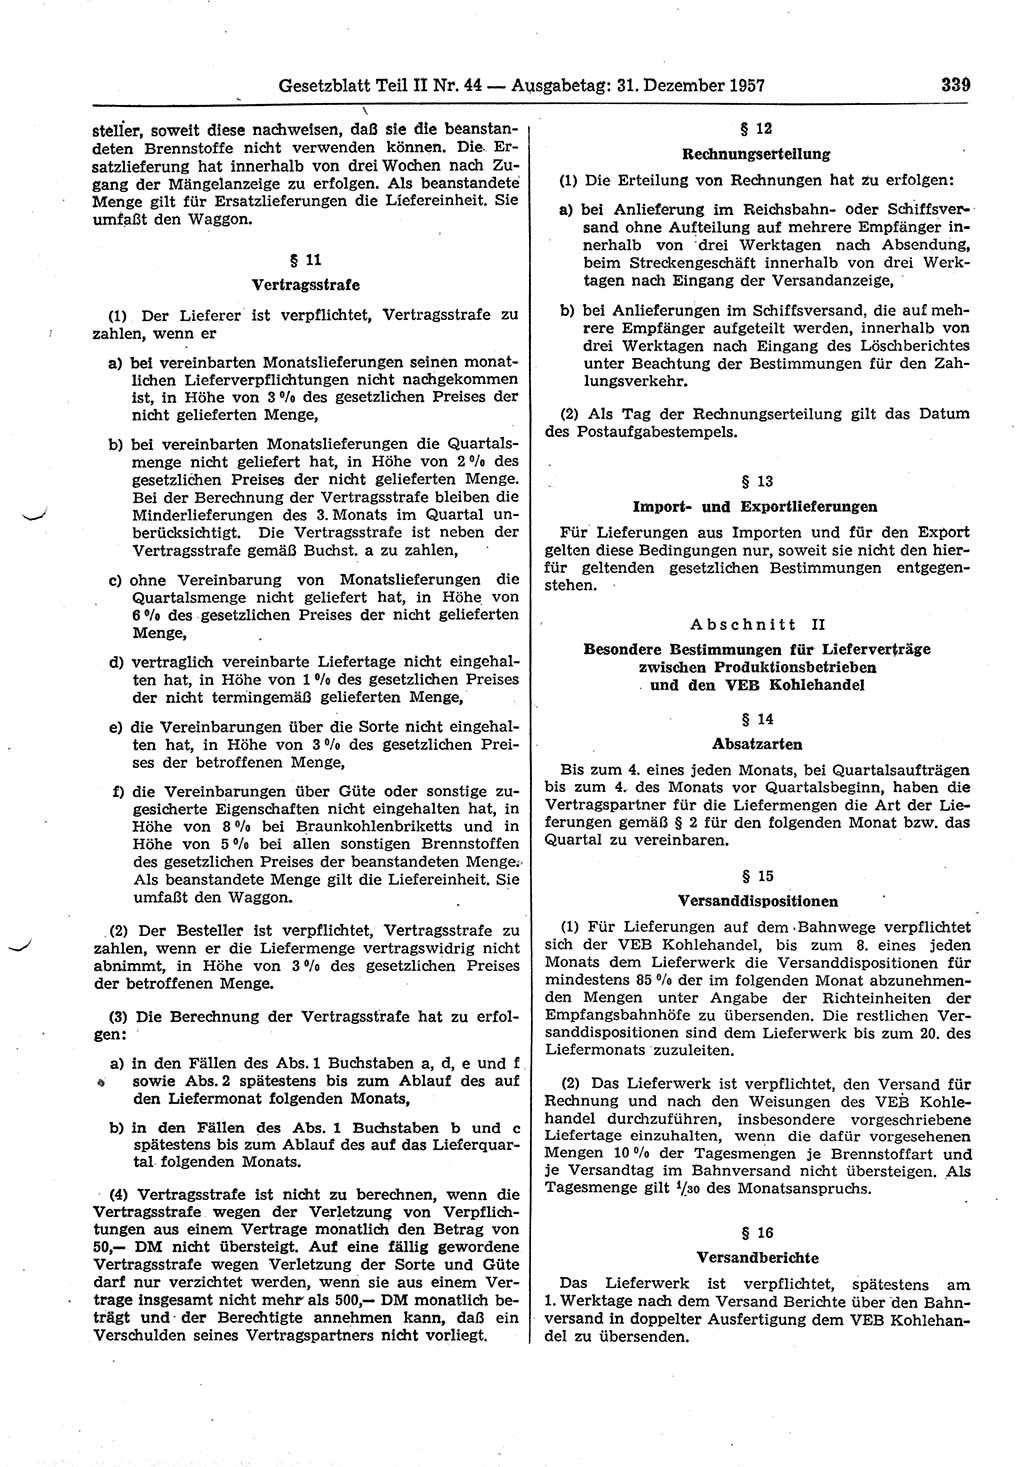 Gesetzblatt (GBl.) der Deutschen Demokratischen Republik (DDR) Teil ⅠⅠ 1957, Seite 339 (GBl. DDR ⅠⅠ 1957, S. 339)